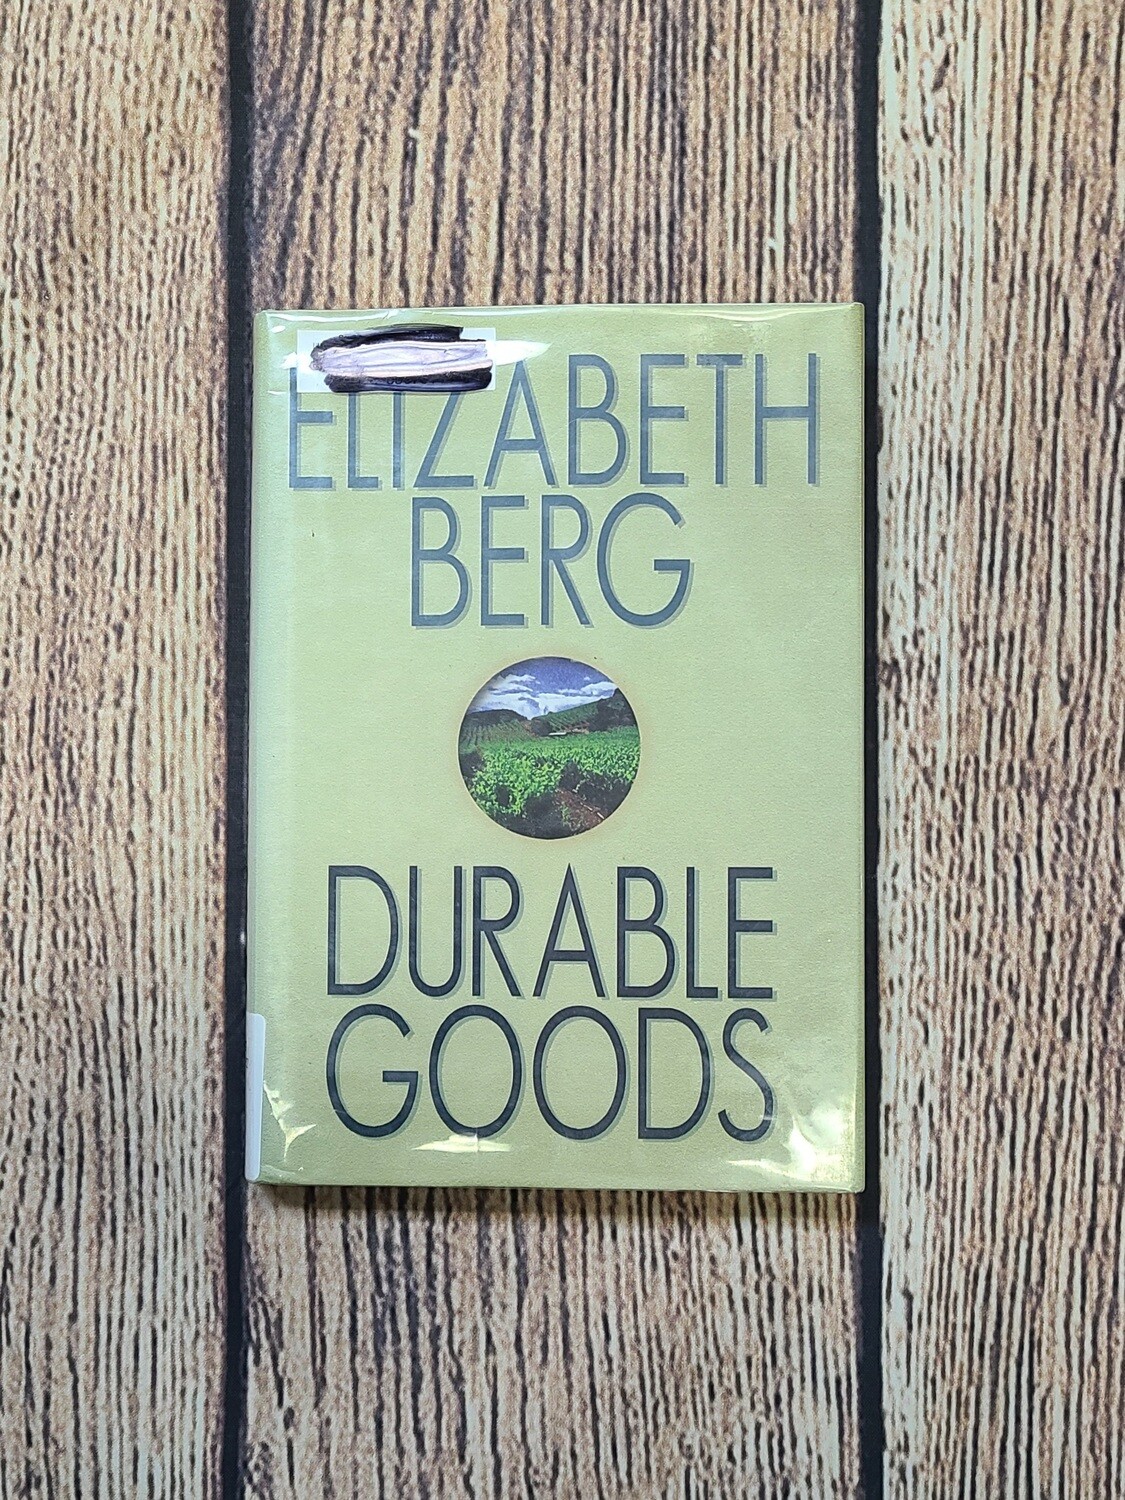 Durable Goods by Elizabeth Berg